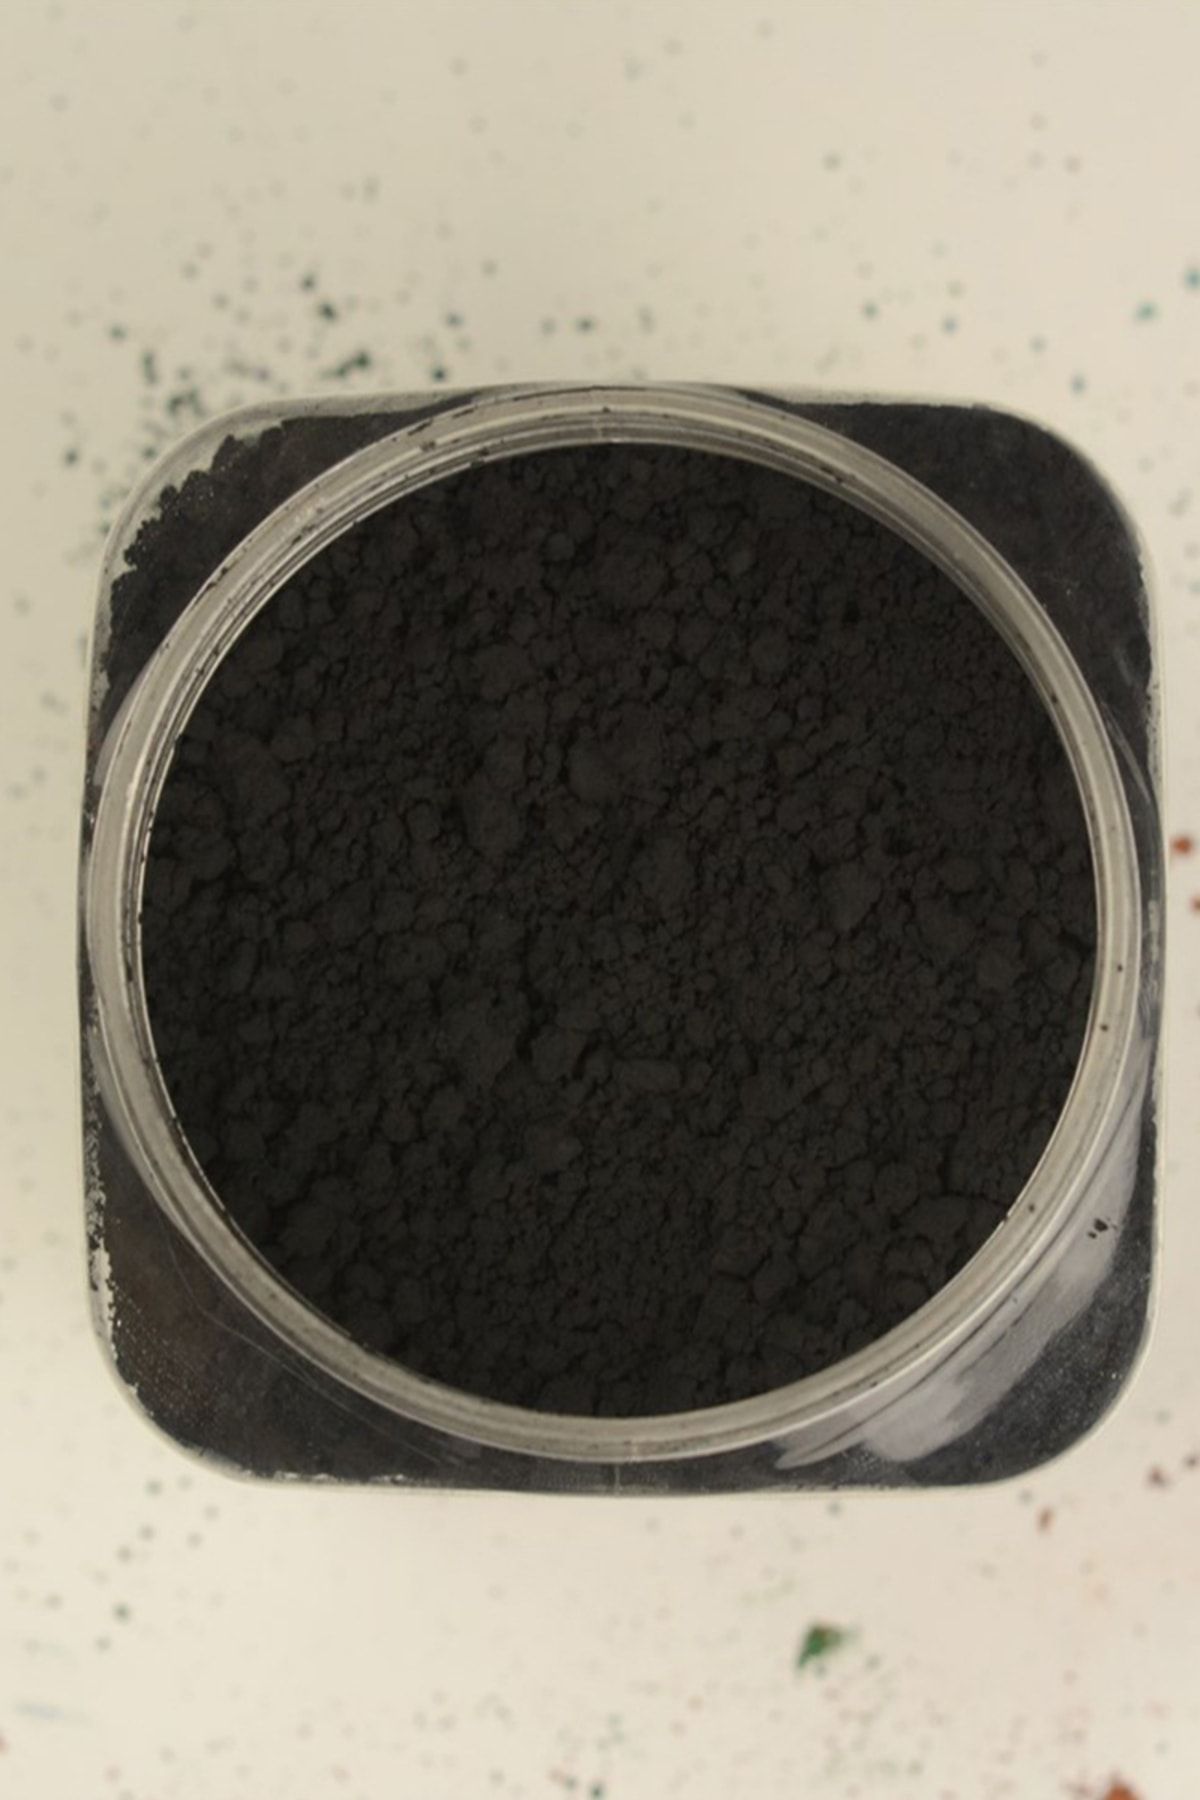 Refsan Sır Altı Toz Boya 781 Mangan Siyah - 100 gr